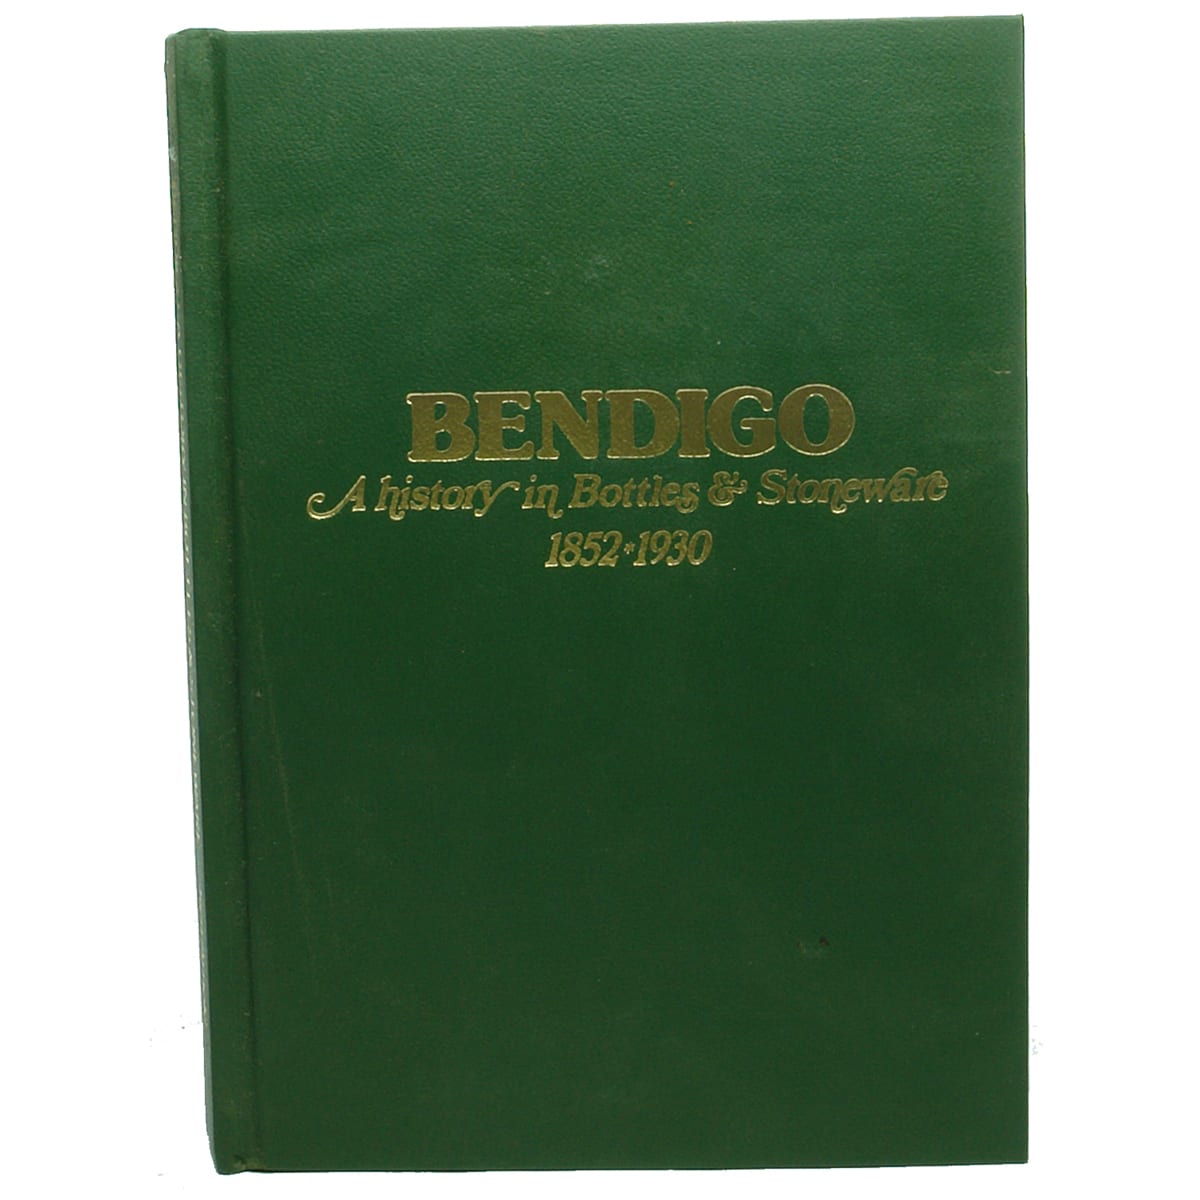 Book. Bendigo. A History in Bottles & Stoneware, 1852-1930. Ken Arnold.